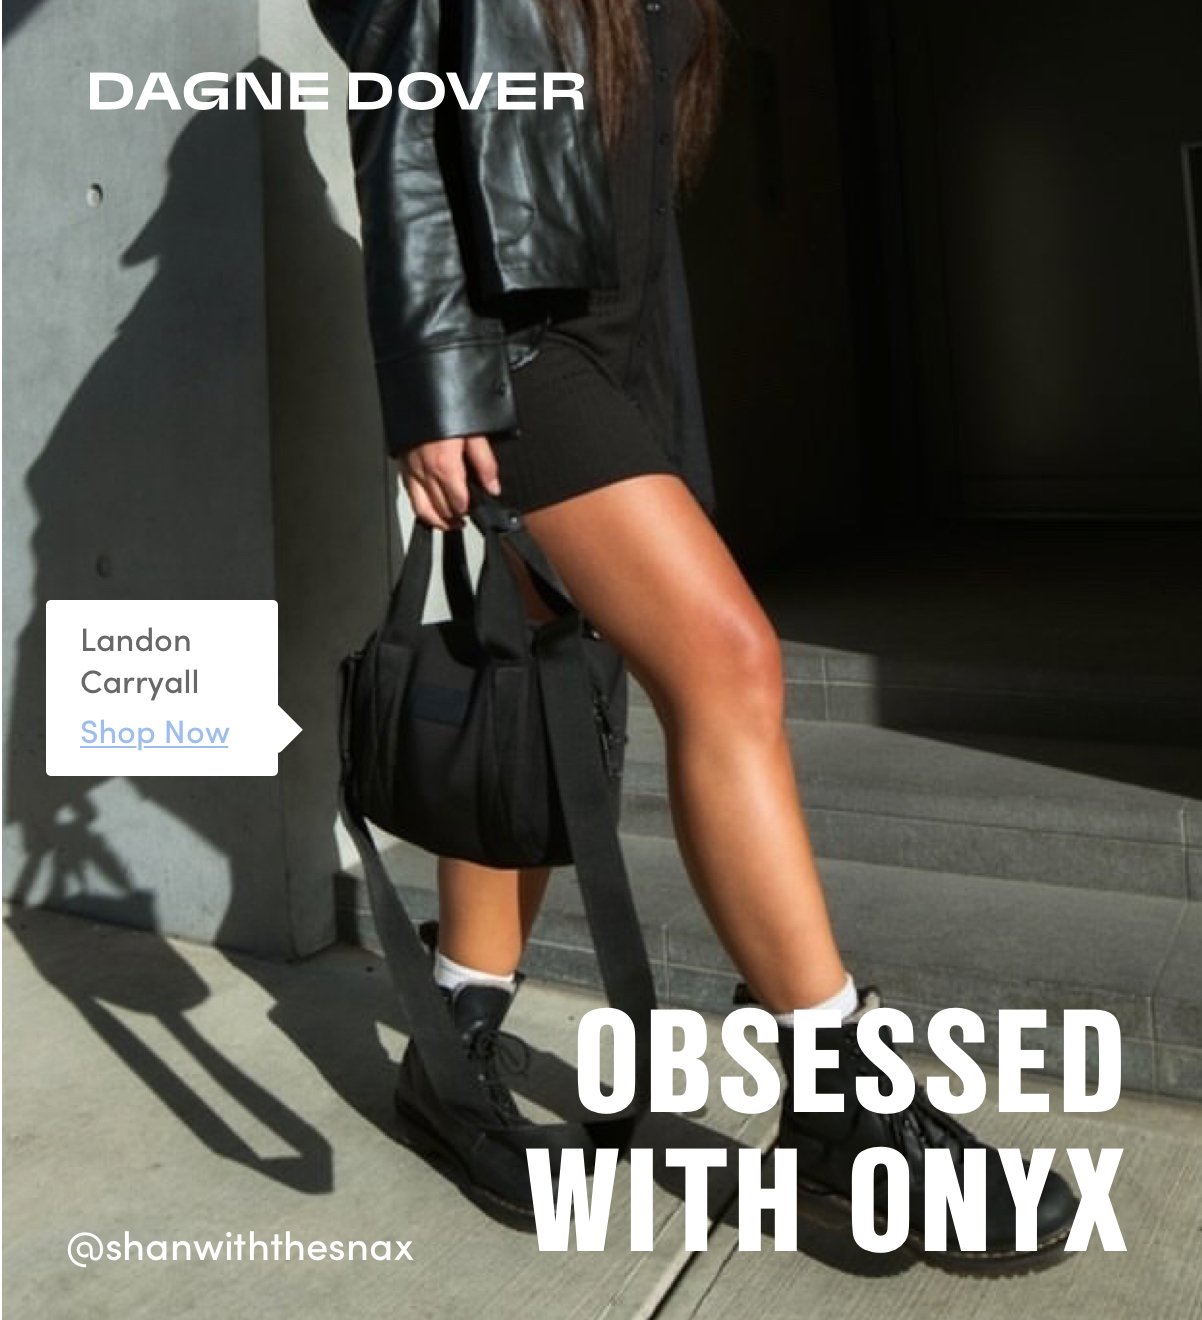 Dagne Dover Extra Large Landon Carryall - Onyx